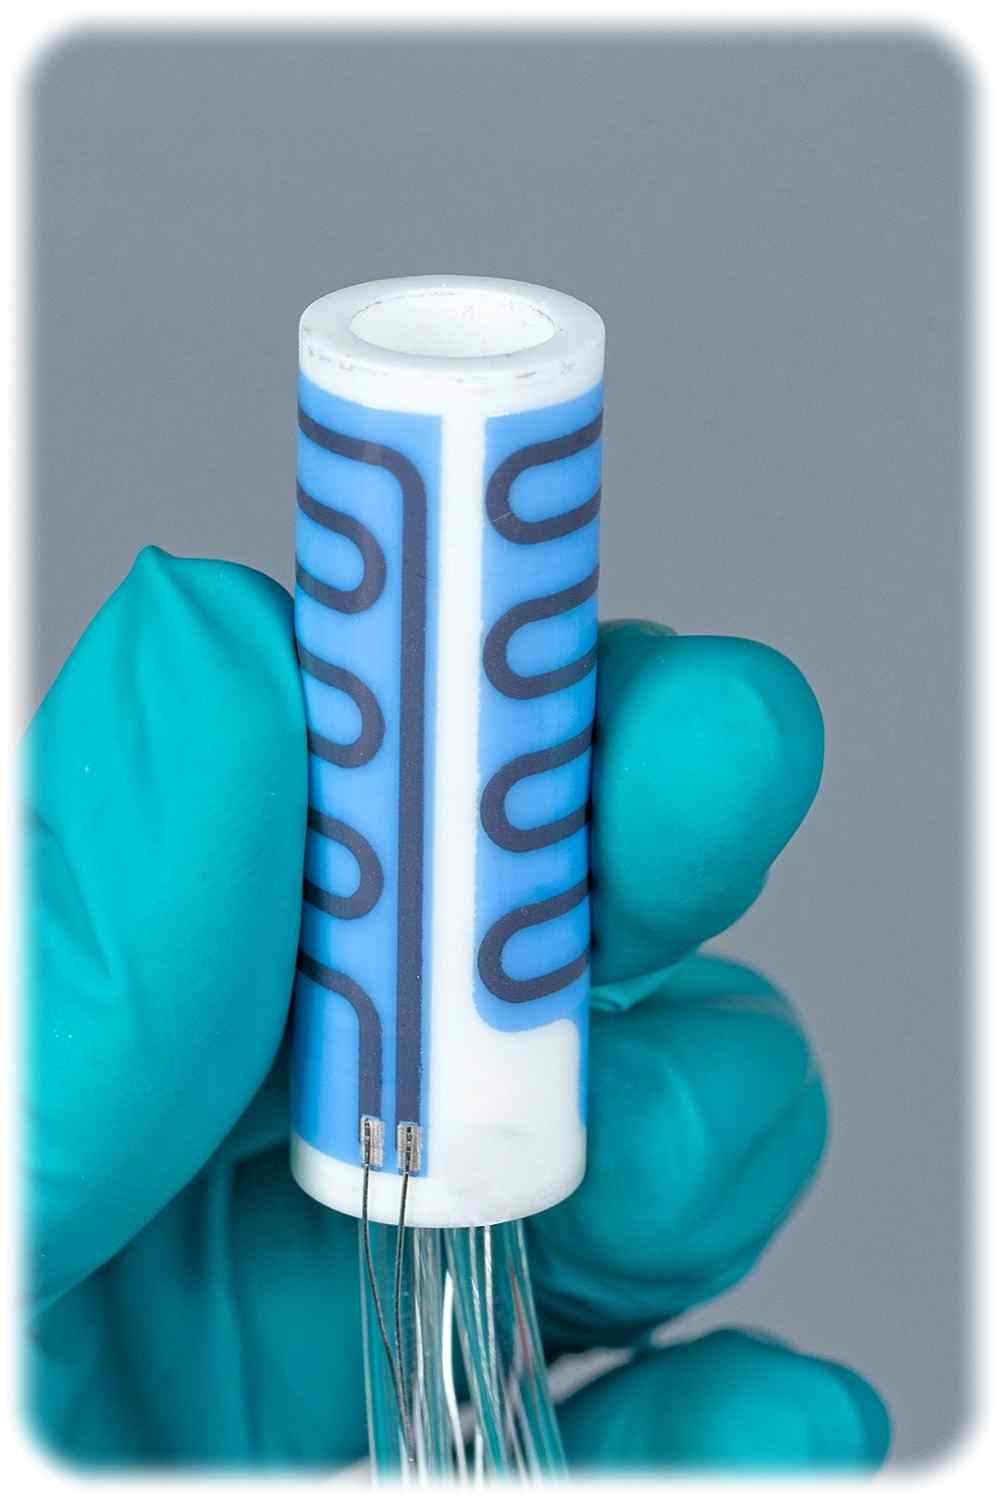 Außen mit Elektrotechnik bedruckt: die keramischen Miniöfen können PCR-Tests von Viren beschleunigen. Foto: Fraunhofer IKTS